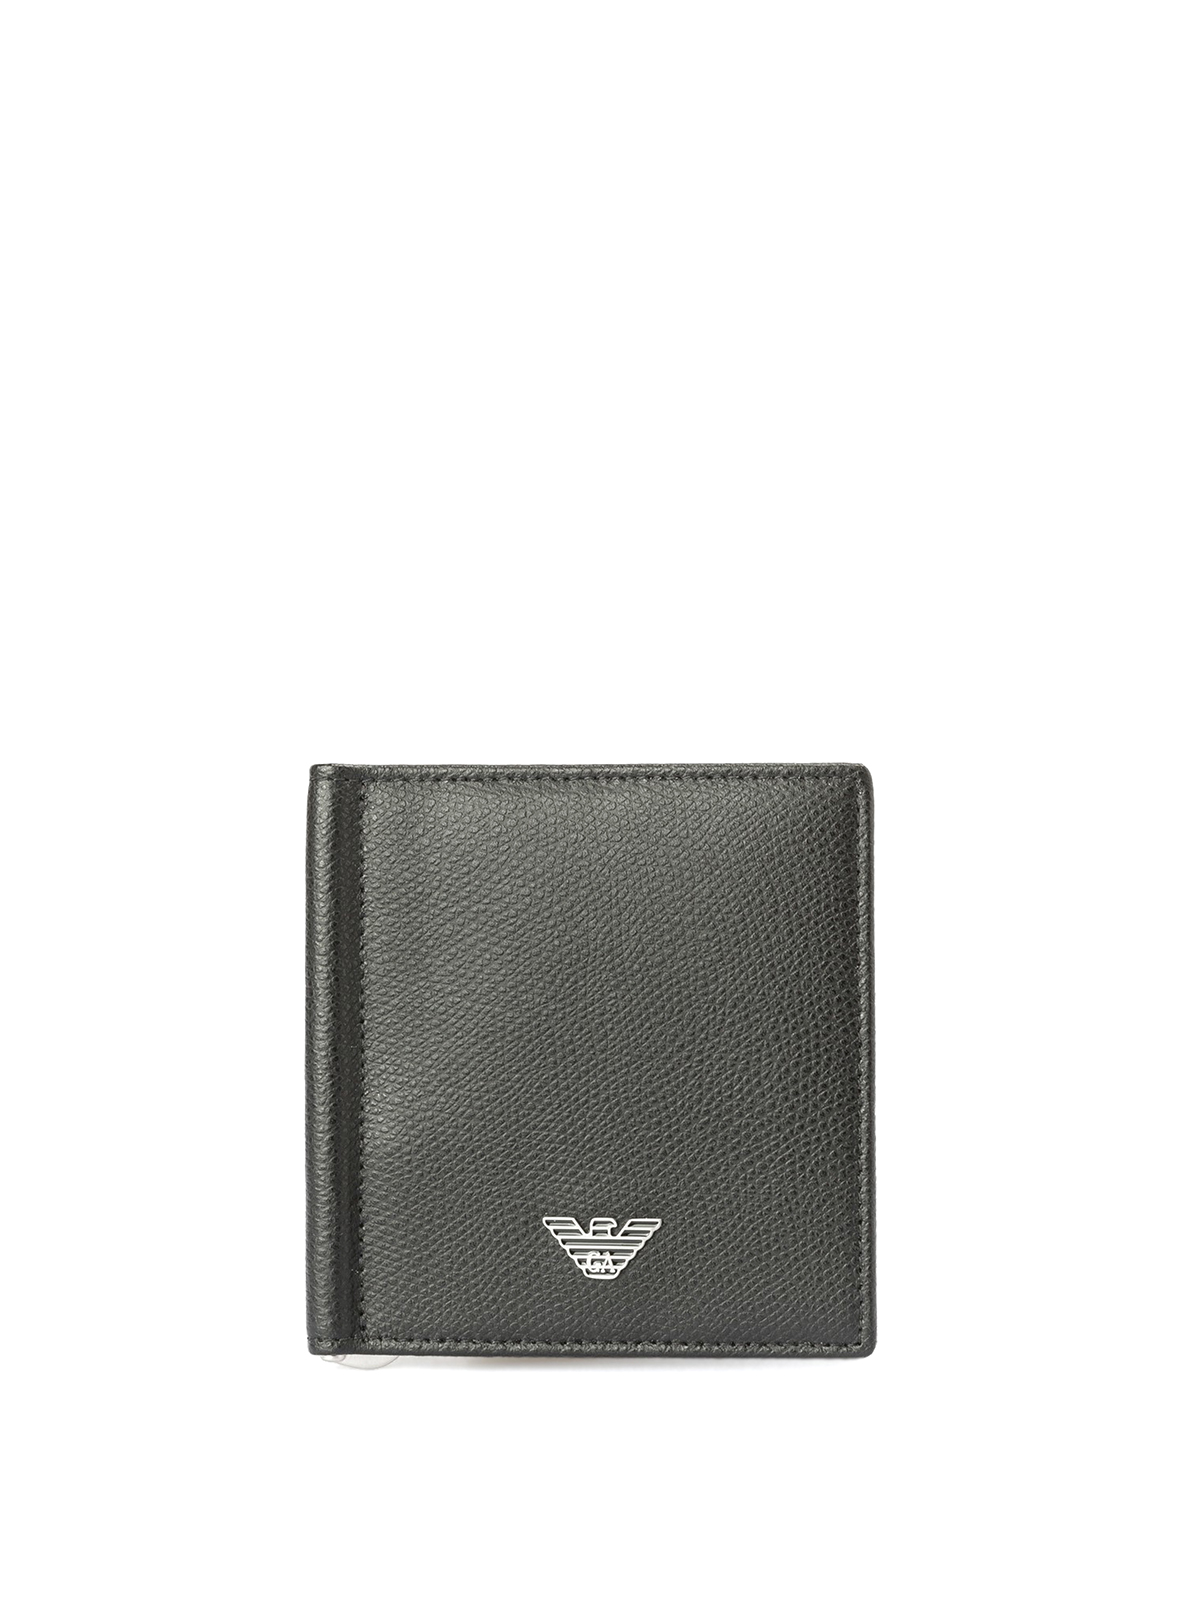 Wallets & purses Emporio Armani - Bifold money clip wallet ...